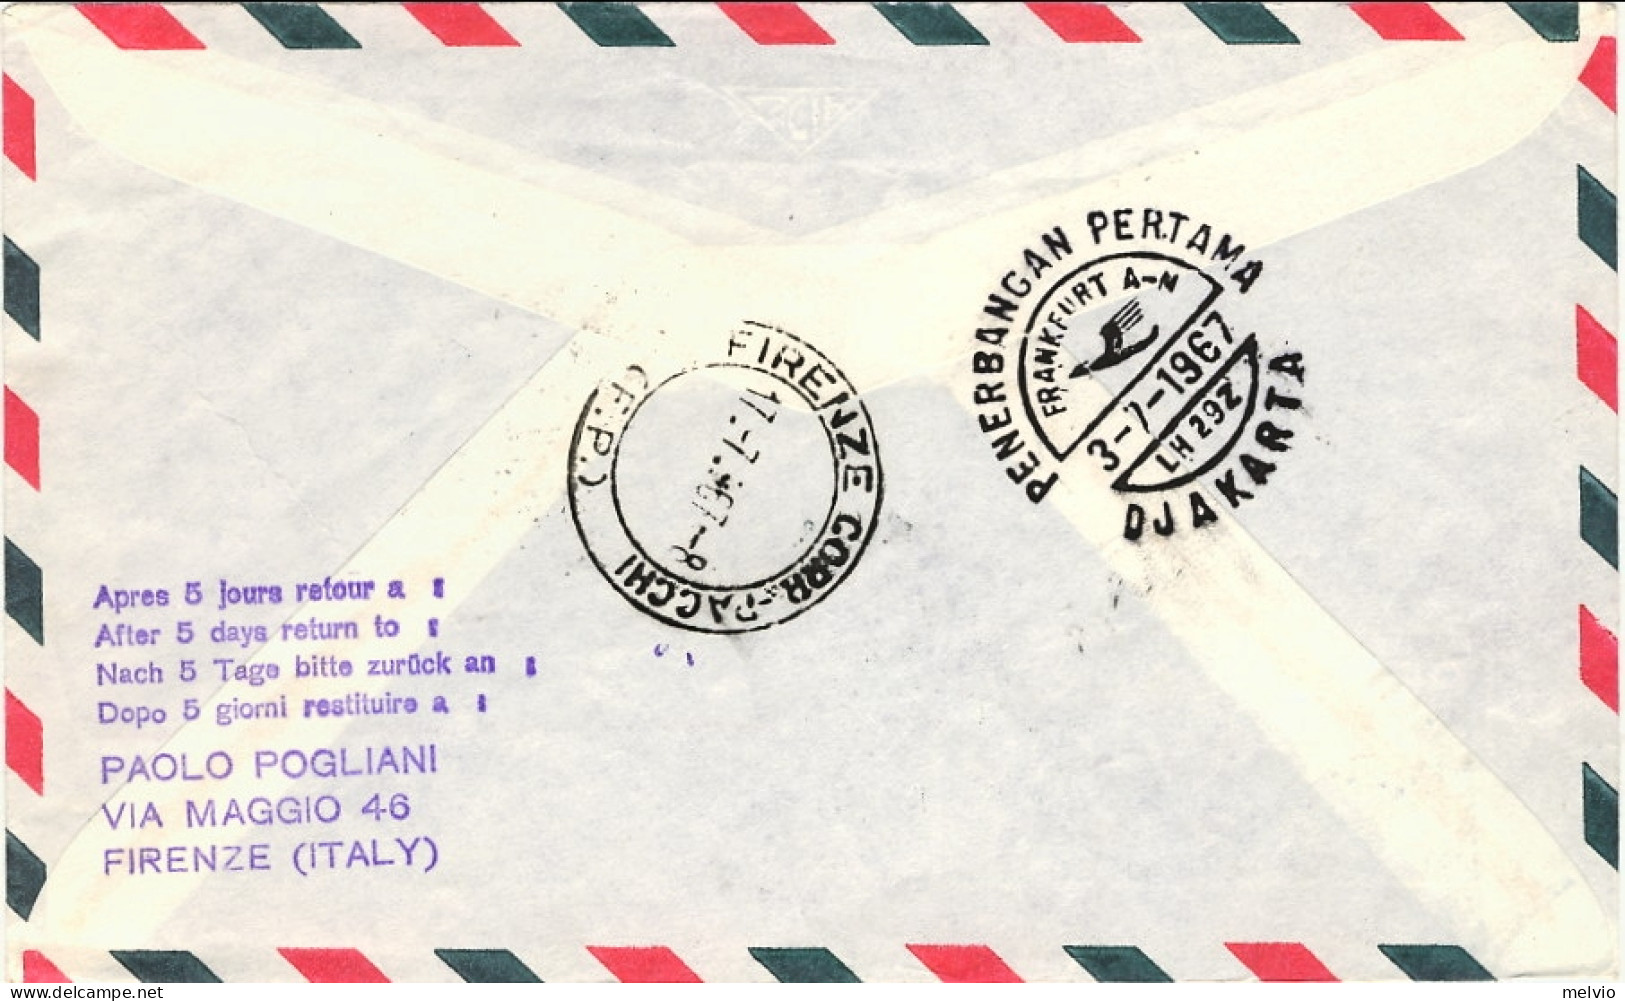 Vaticano-1967 Lufthansa I^volo Francoforte Djakarta Del 2 Luglio - Airmail